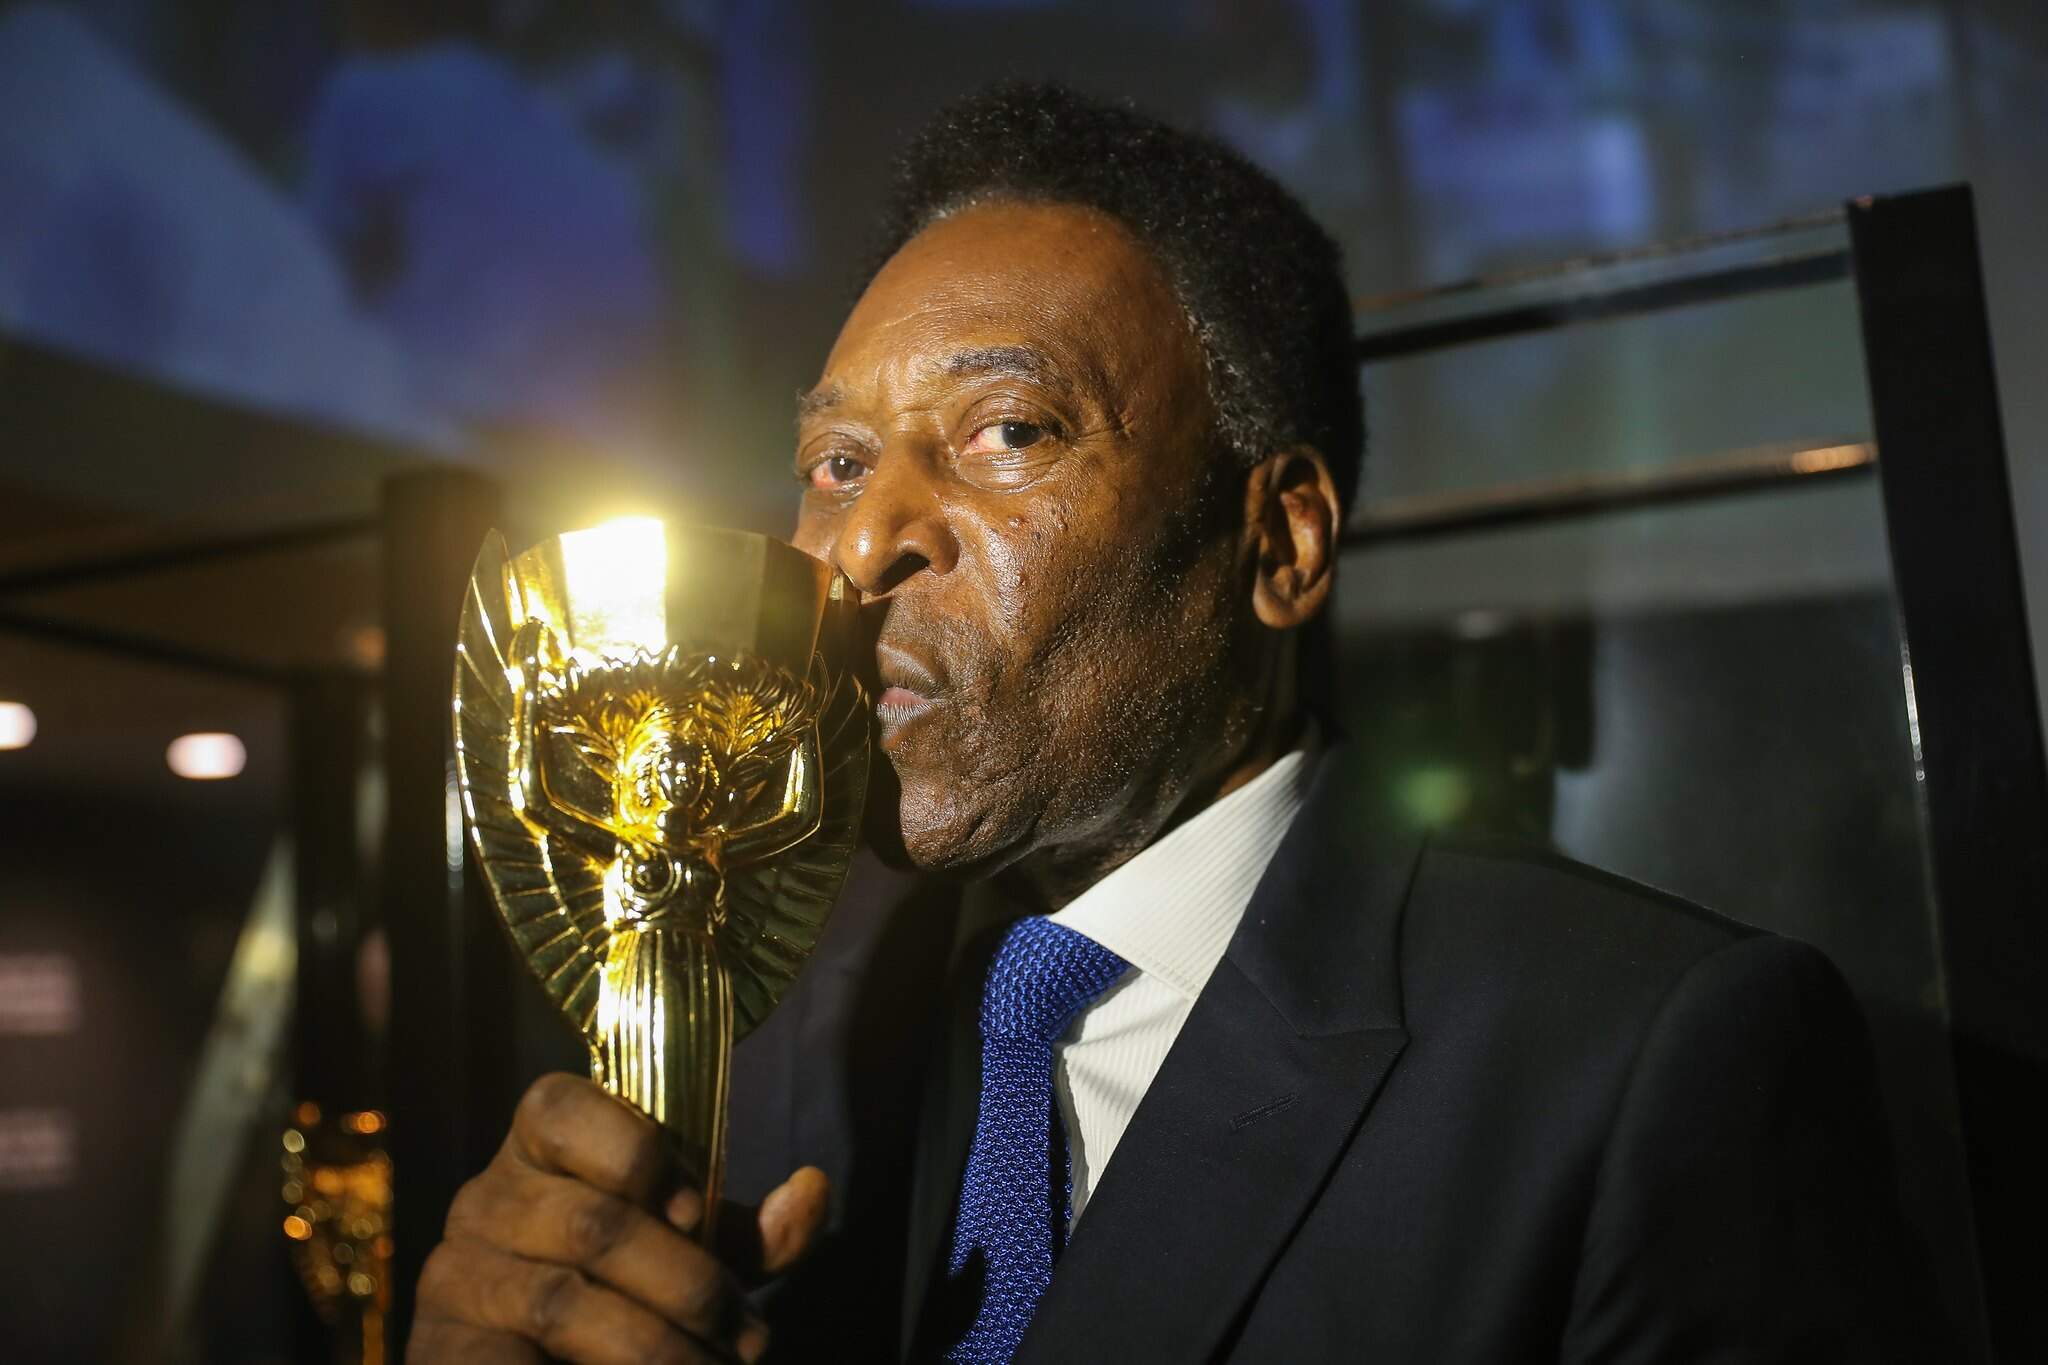 Morreu Pelé, o Rei do Futebol. Tinha 82 anos – Observador